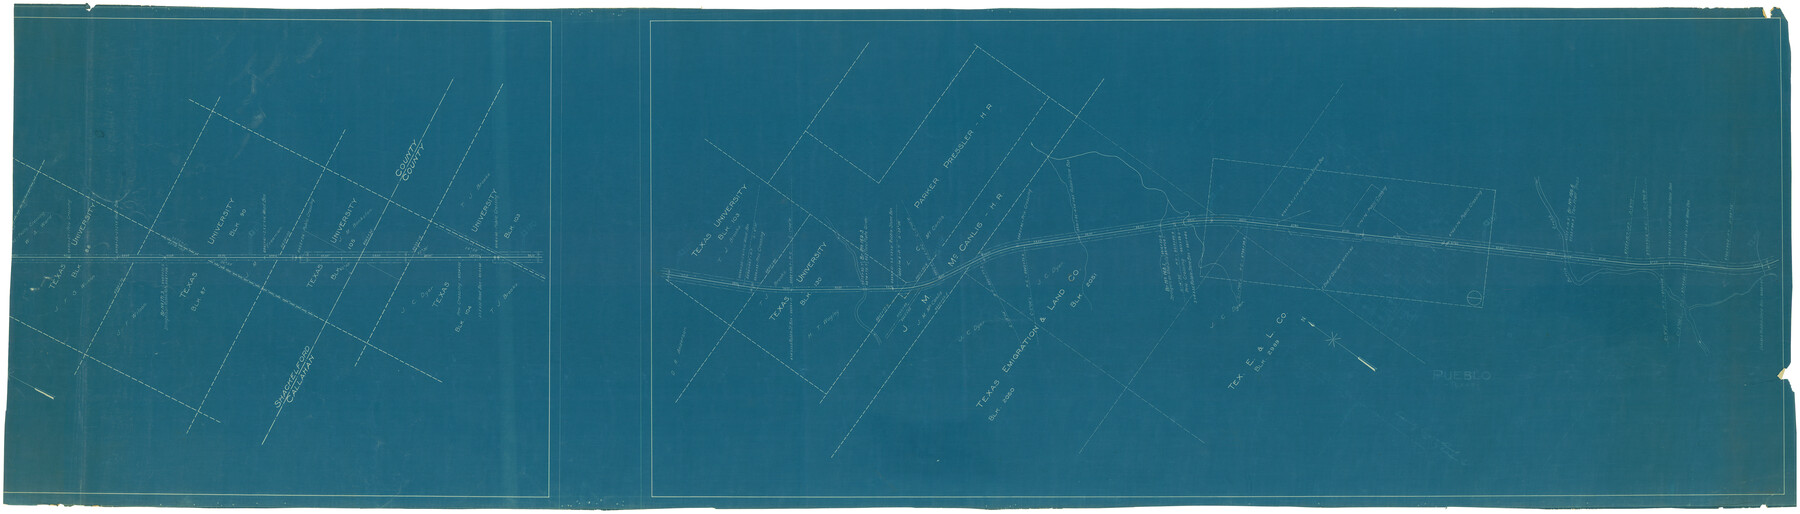 64240, [Texas Central Railway through Callahan County], General Map Collection